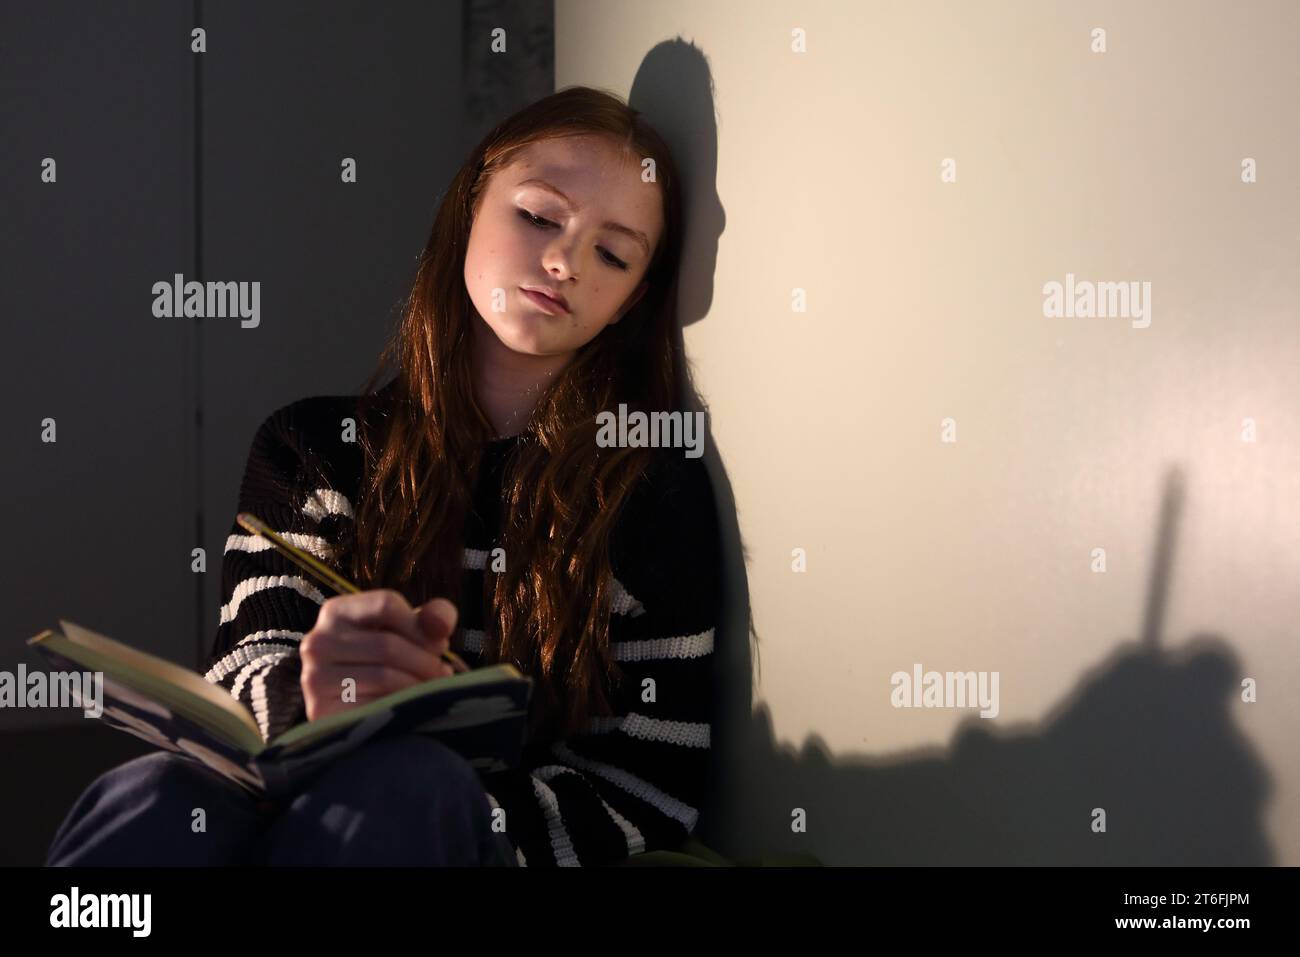 Teenager-Mädchen macht Notizen mit einem Bleistift in einem Notizbuch, denkt darüber nach, was man schreiben soll, Schatten an der Wand des Notizbuchs und Bleistift Teenager schreiben Stockfoto